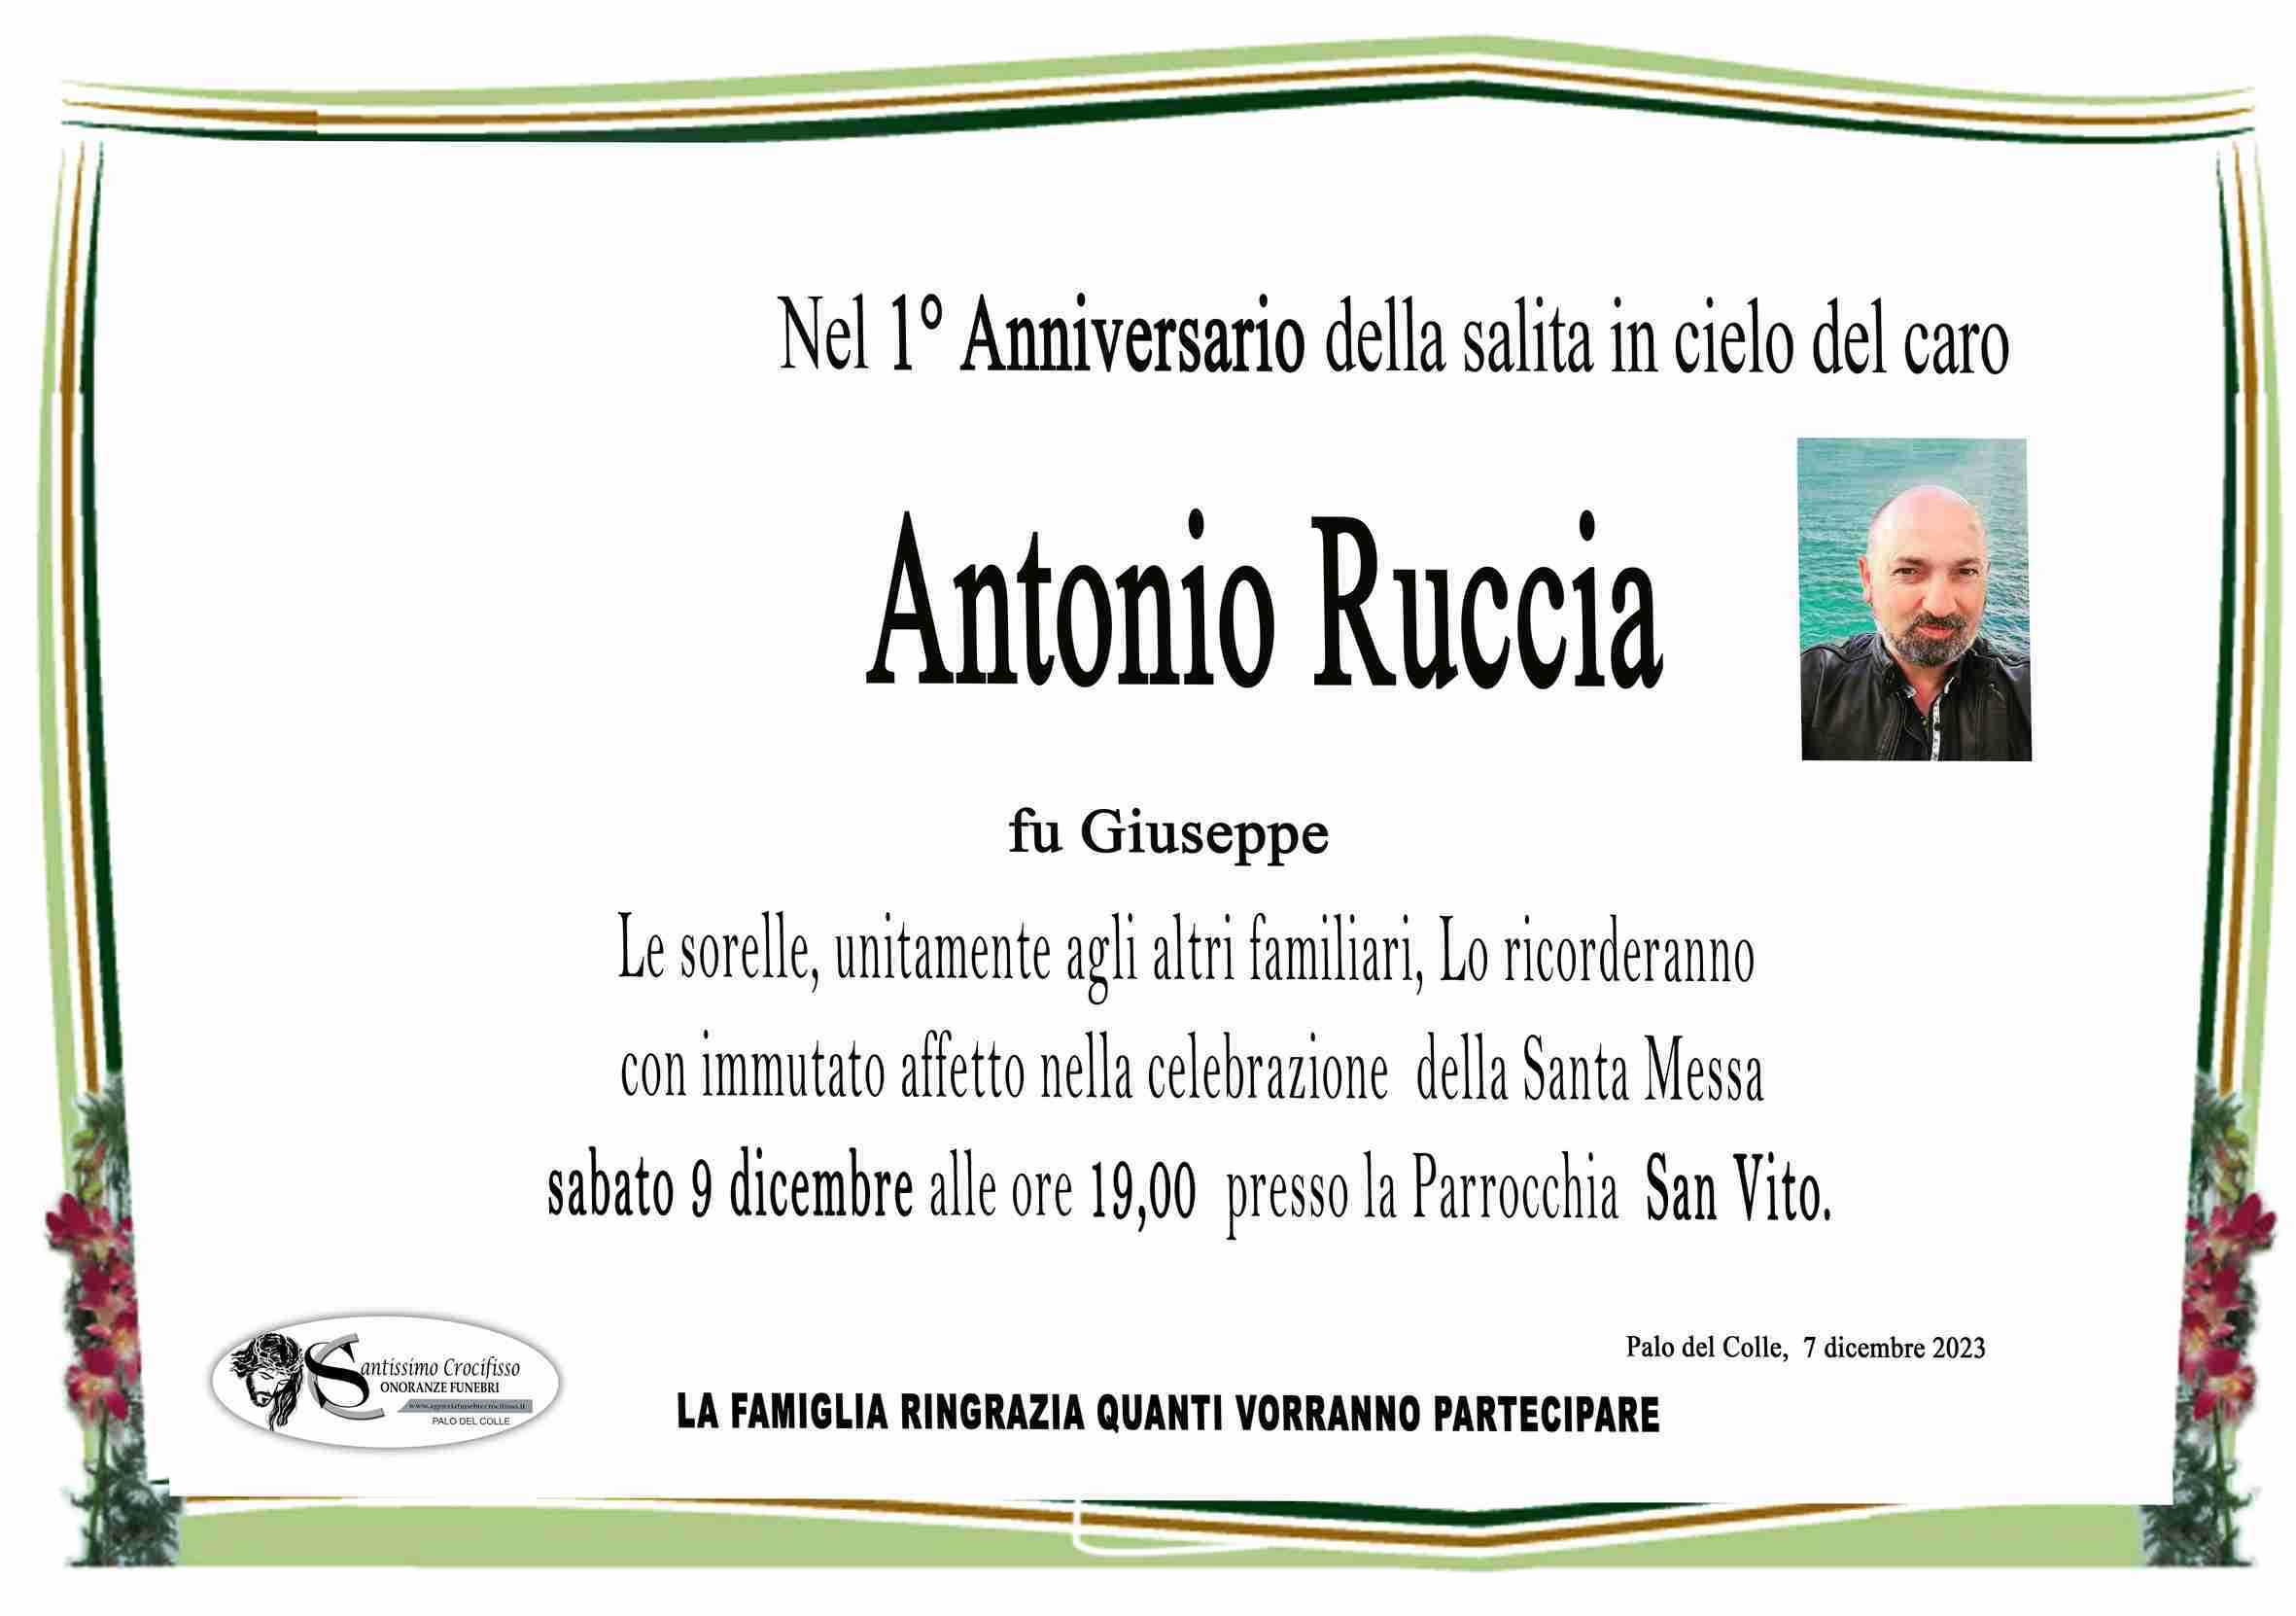 Antonio Ruccia